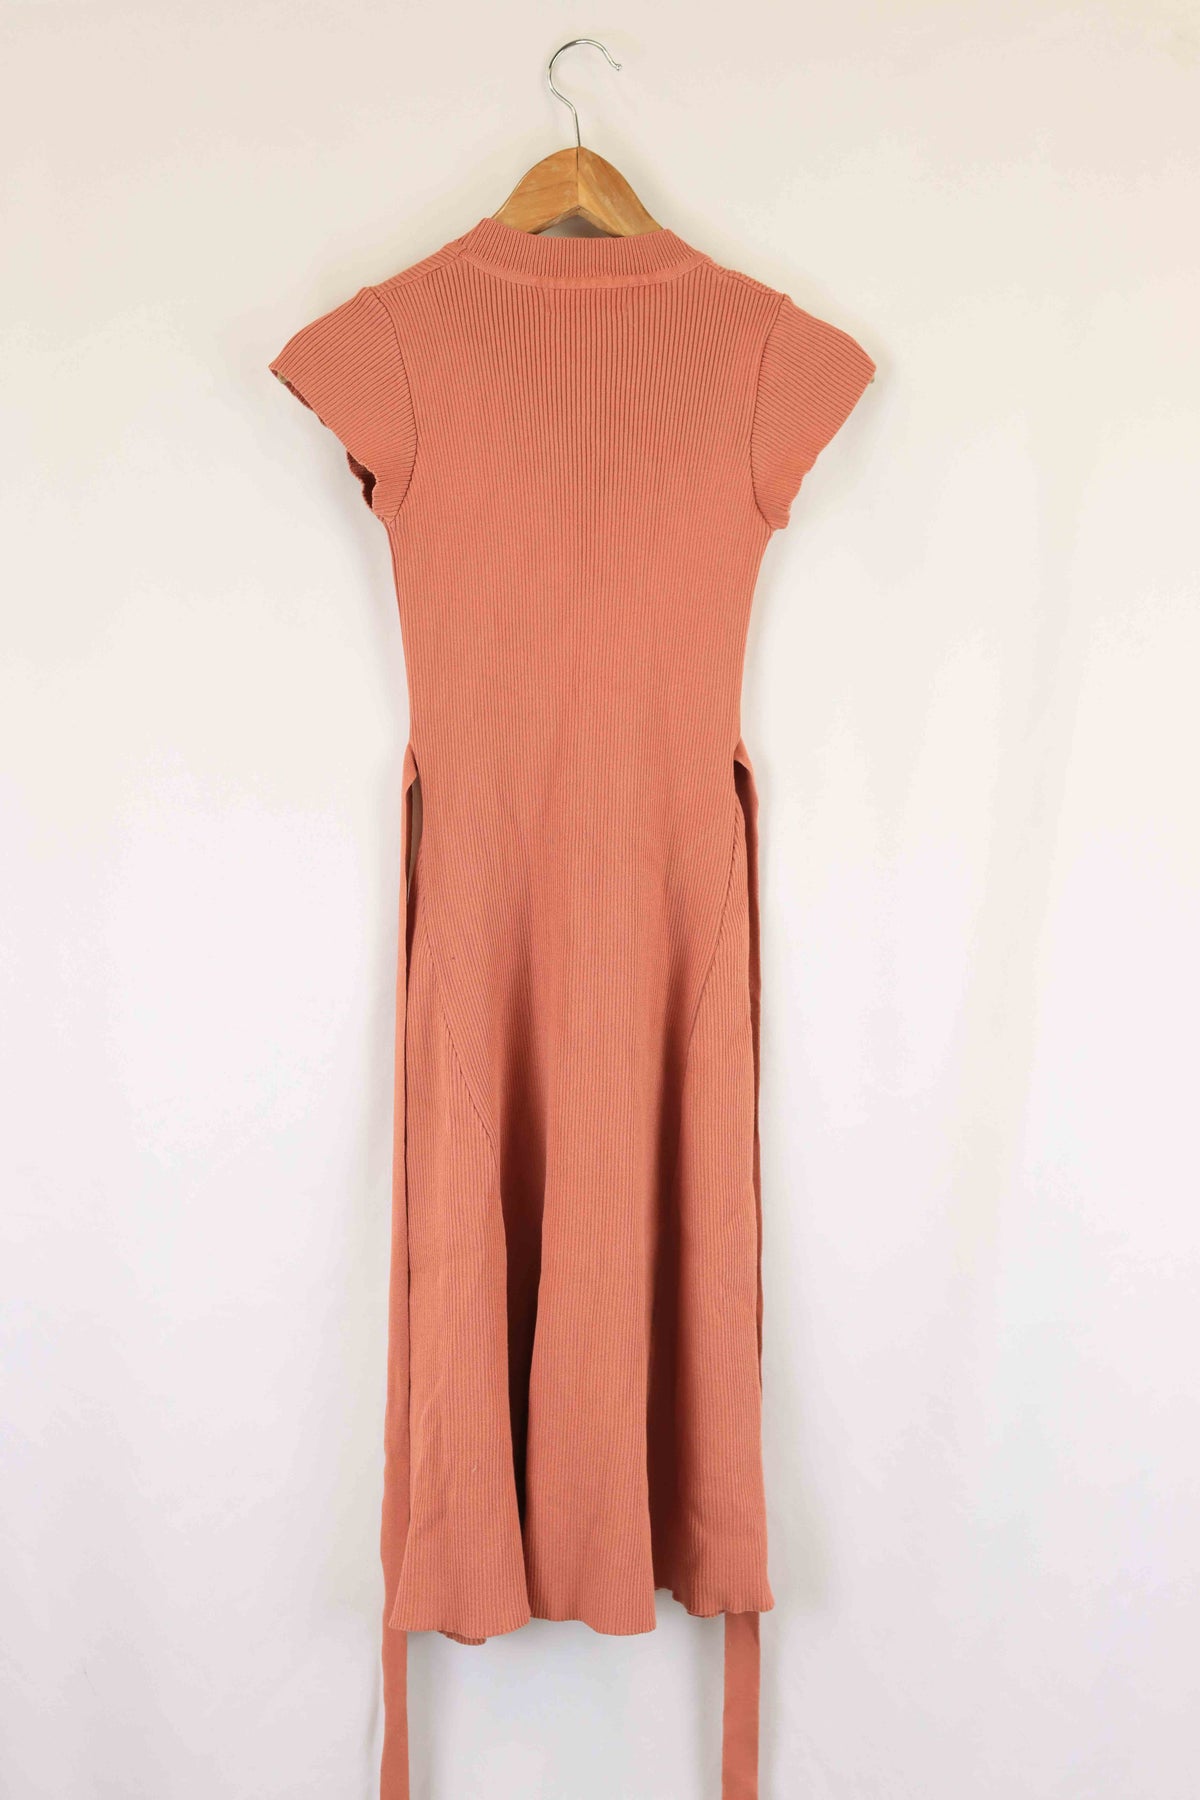 Whyte Valentyne Peach Dress 8